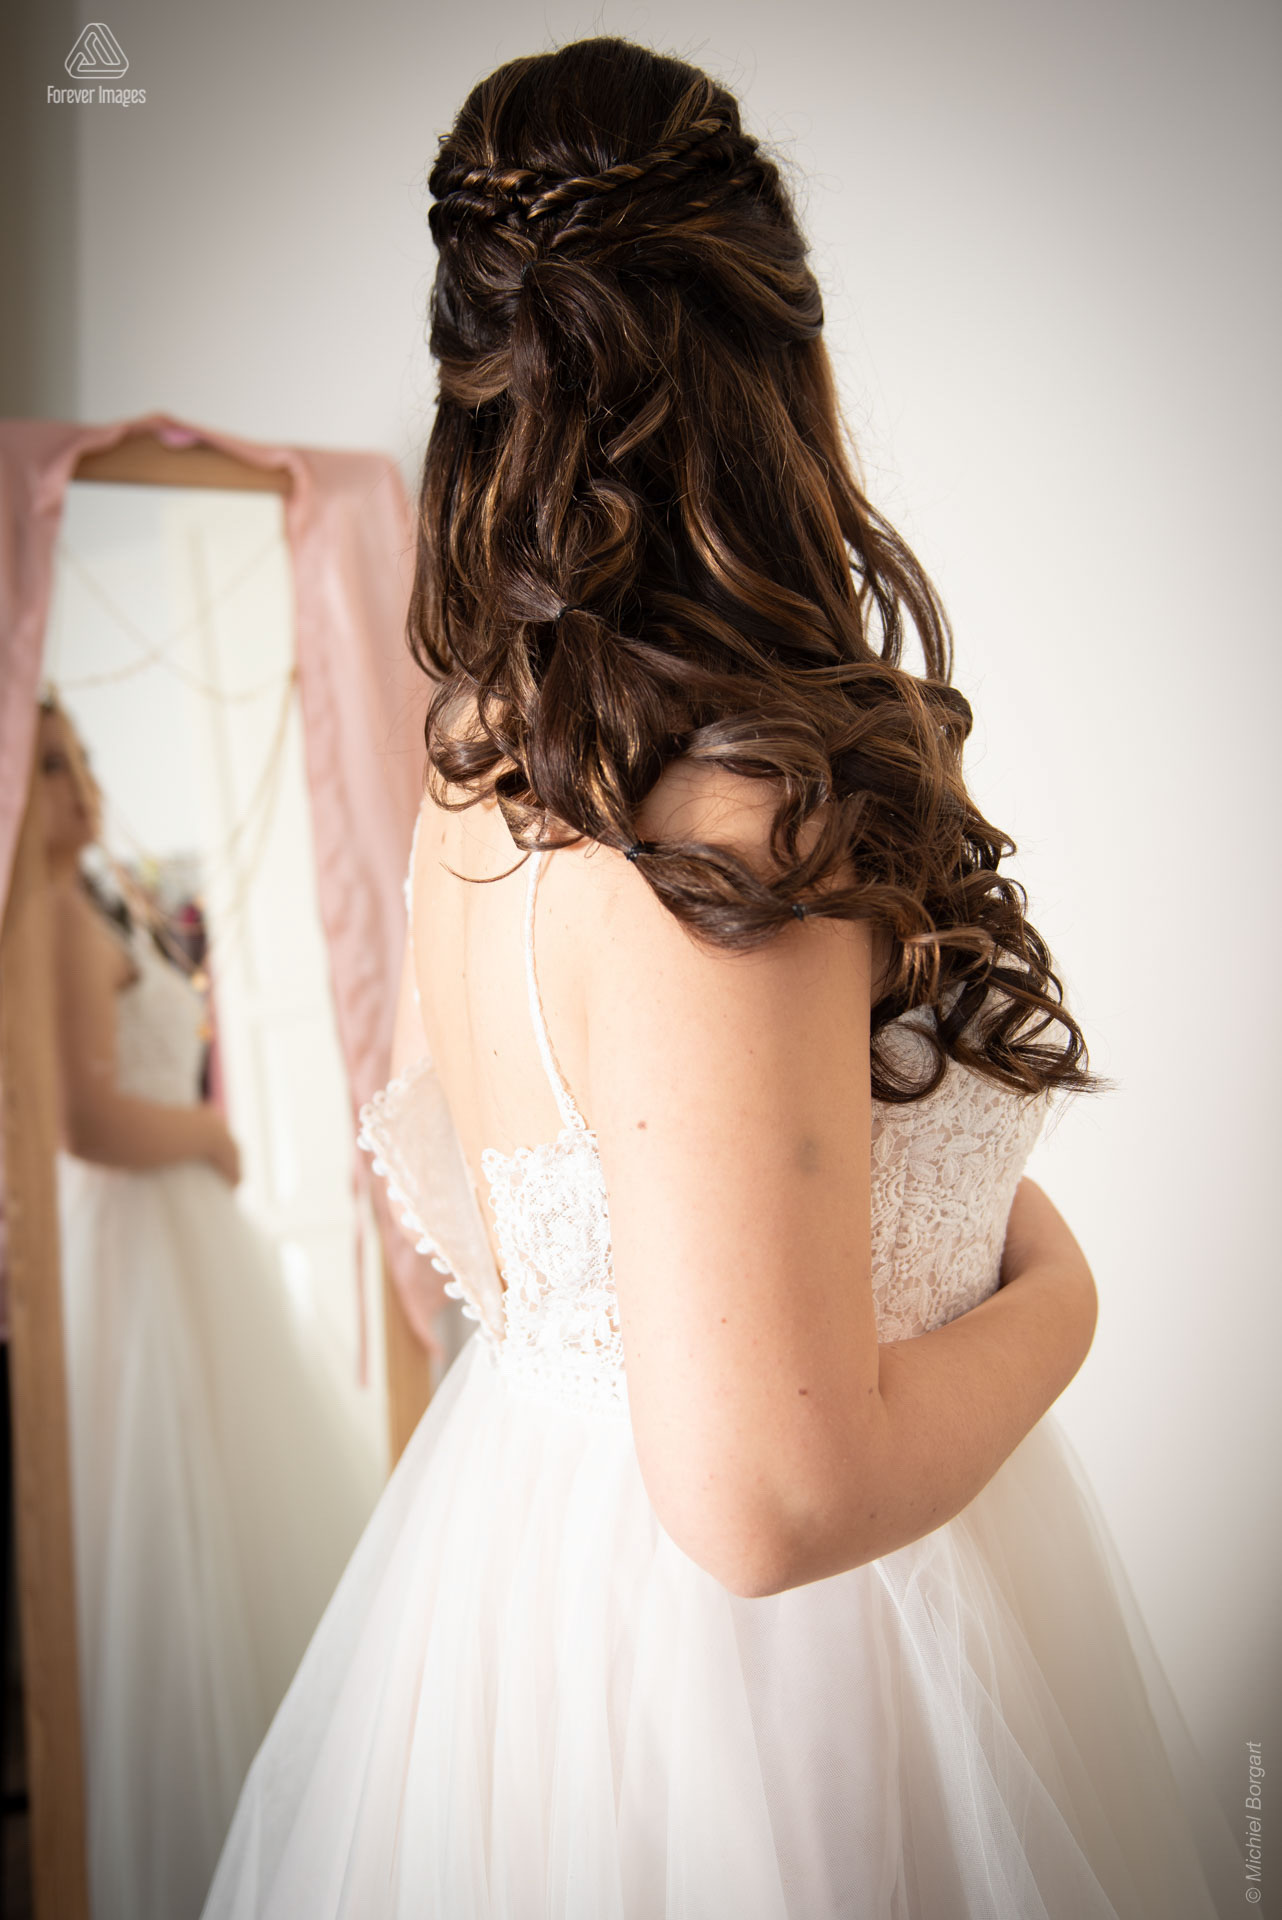 Bruidsfoto aantrekken bruidsjurk voor spiegel | Bruidsfotograaf Michiel Borgart - Forever Images.